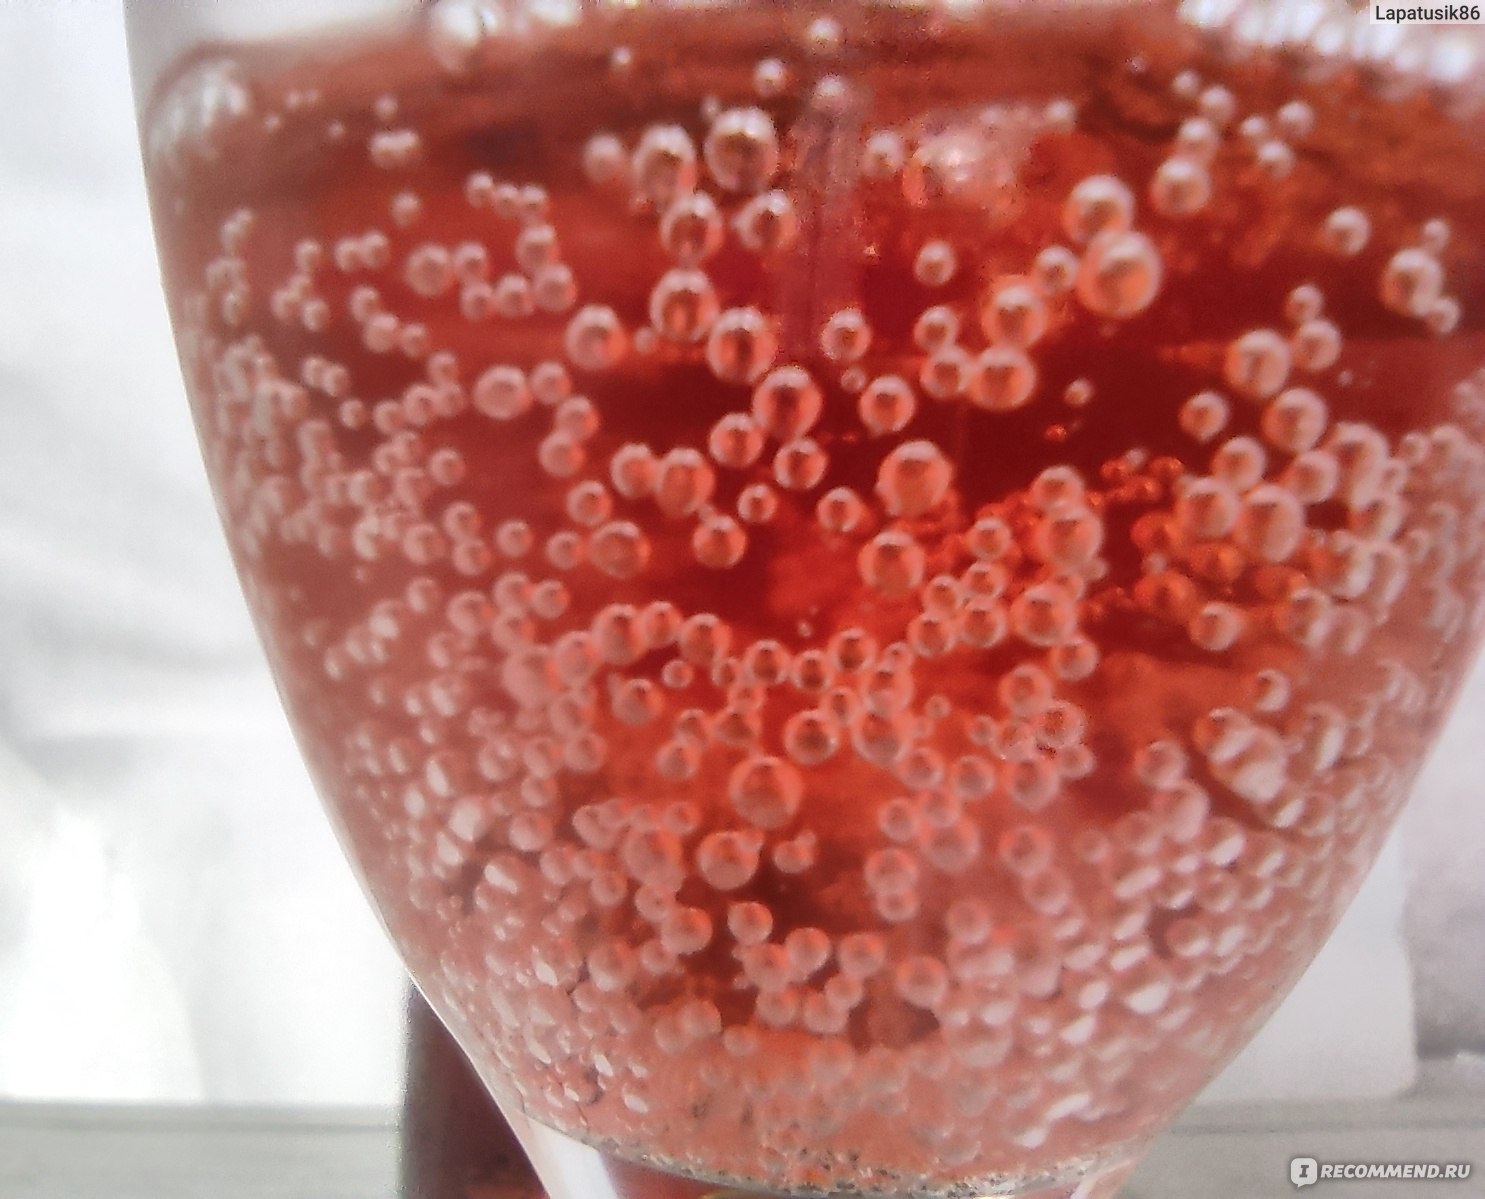 Шампанское Абрау-Дюрсо Полусухое розовое фото